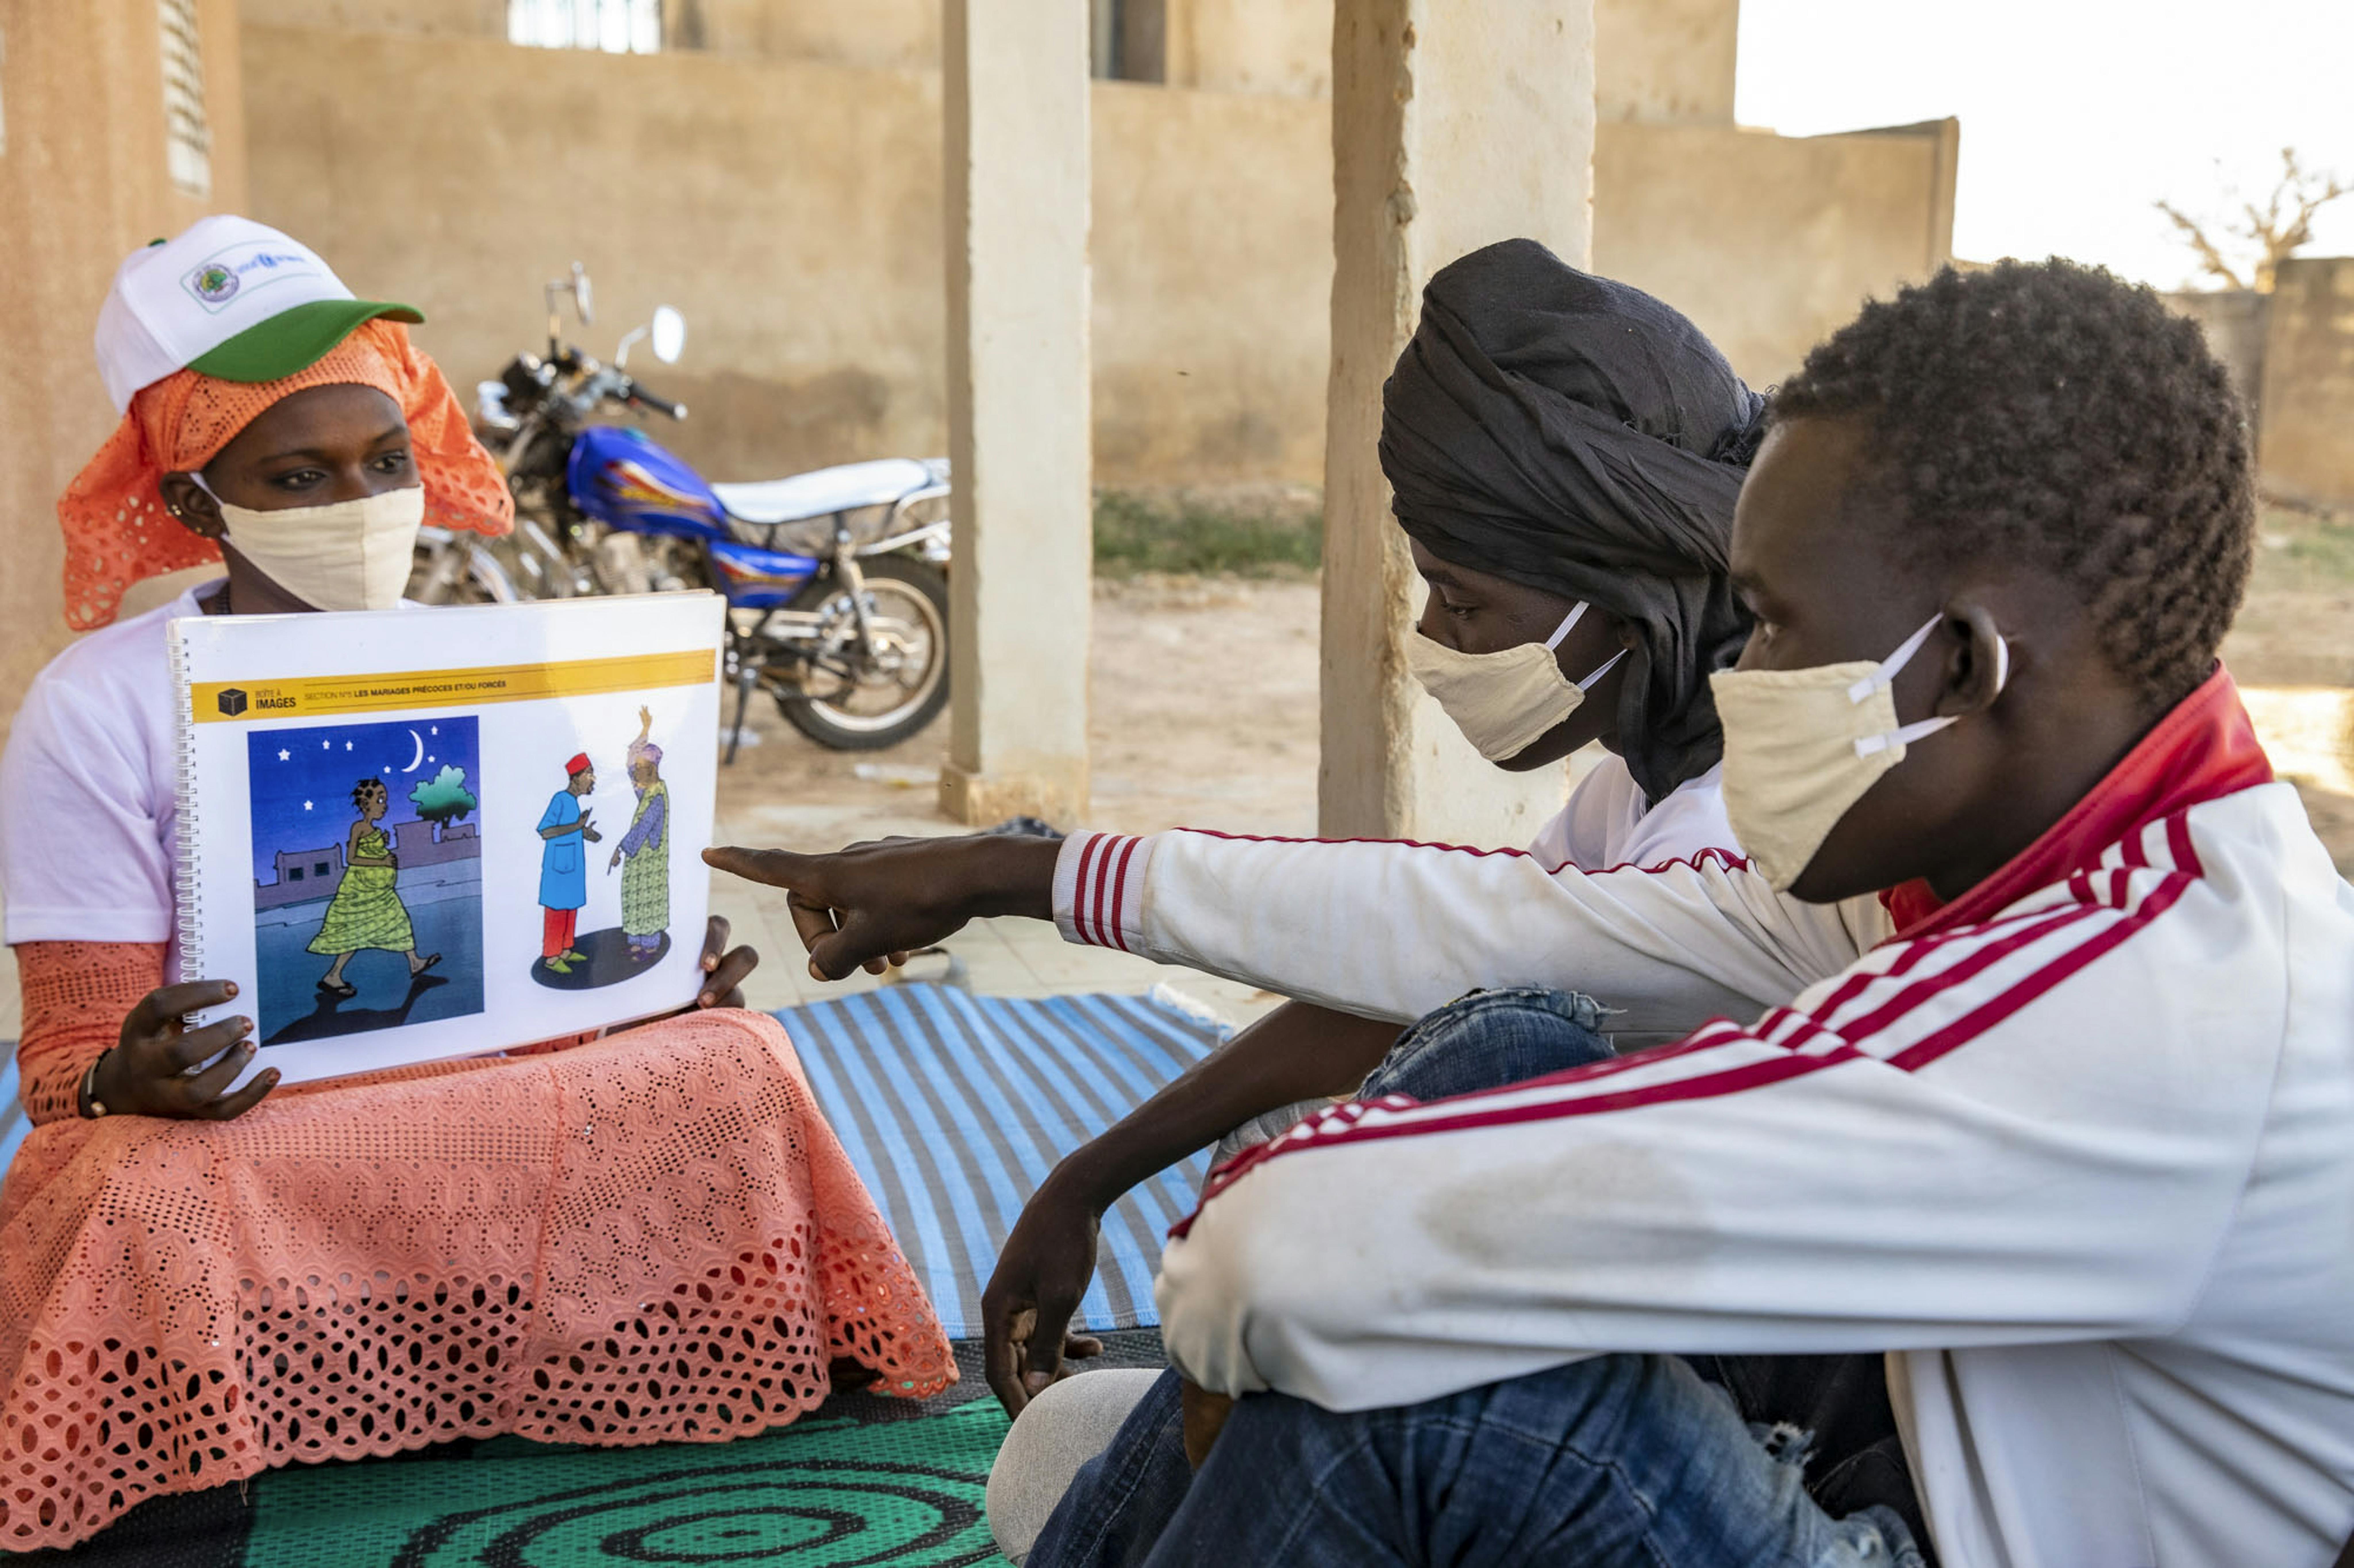 Mali, villaggio di Gadiaba: Kadidia Sow nell'ambito dell'iniziativa Spotlight anima un dibattito con i giovani del villaggio per sensibilizzarli contro ogni forma di violenza, compresi i matrimoni precoci, le mutilazioni genitali femminili (MGF) e altre pratiche dannose all'interno della comunità.